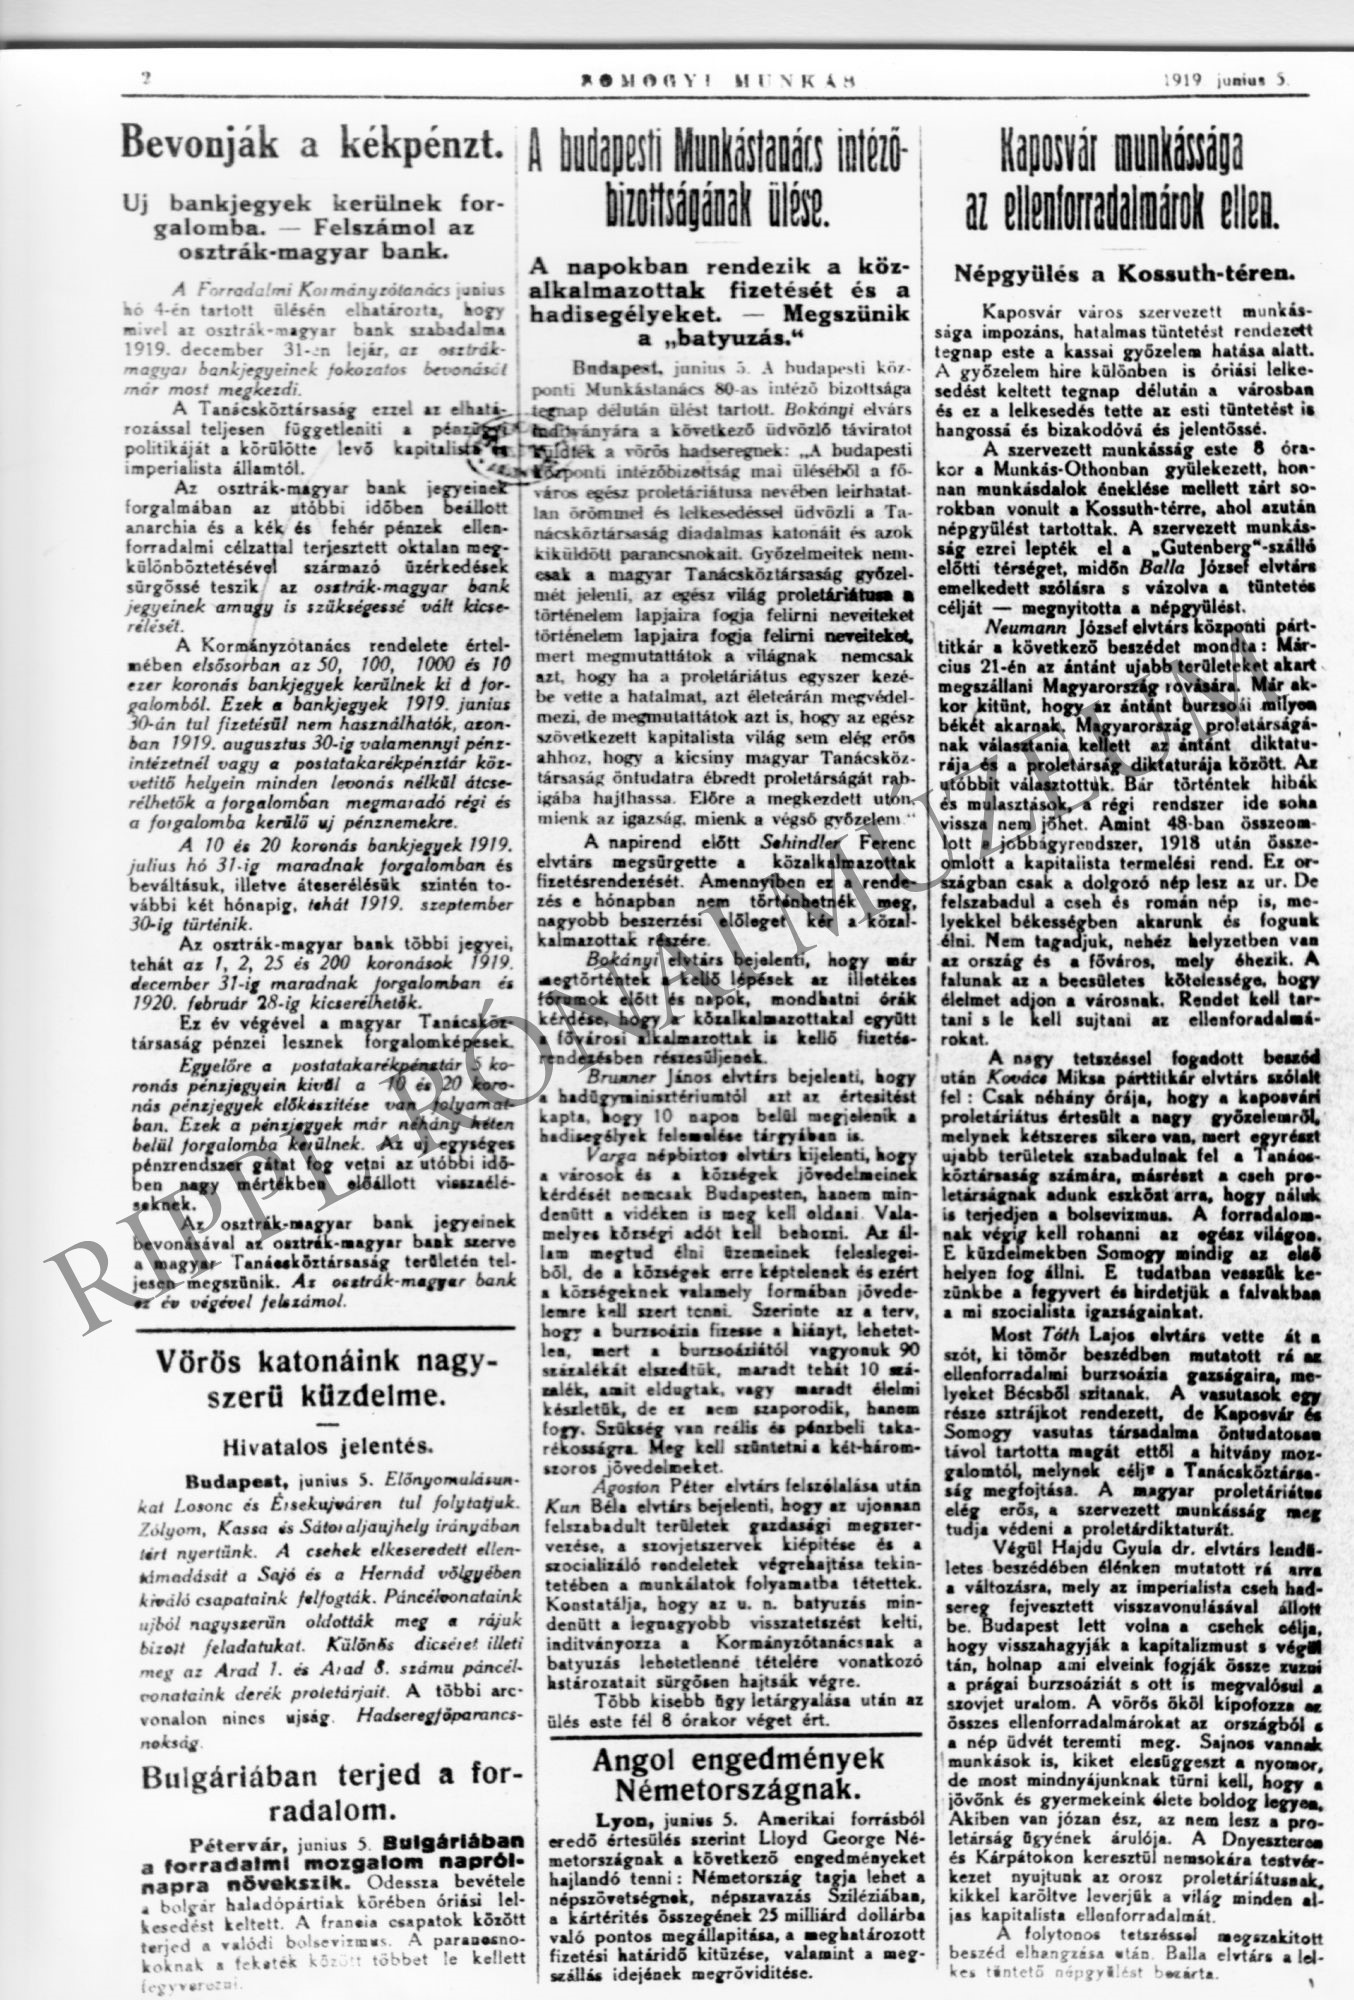 Somogyi Munkás 1919. június 5.:" Kaposvár munkássága az ellenforradalmárok ellen" (Rippl-Rónai Múzeum CC BY-NC-SA)